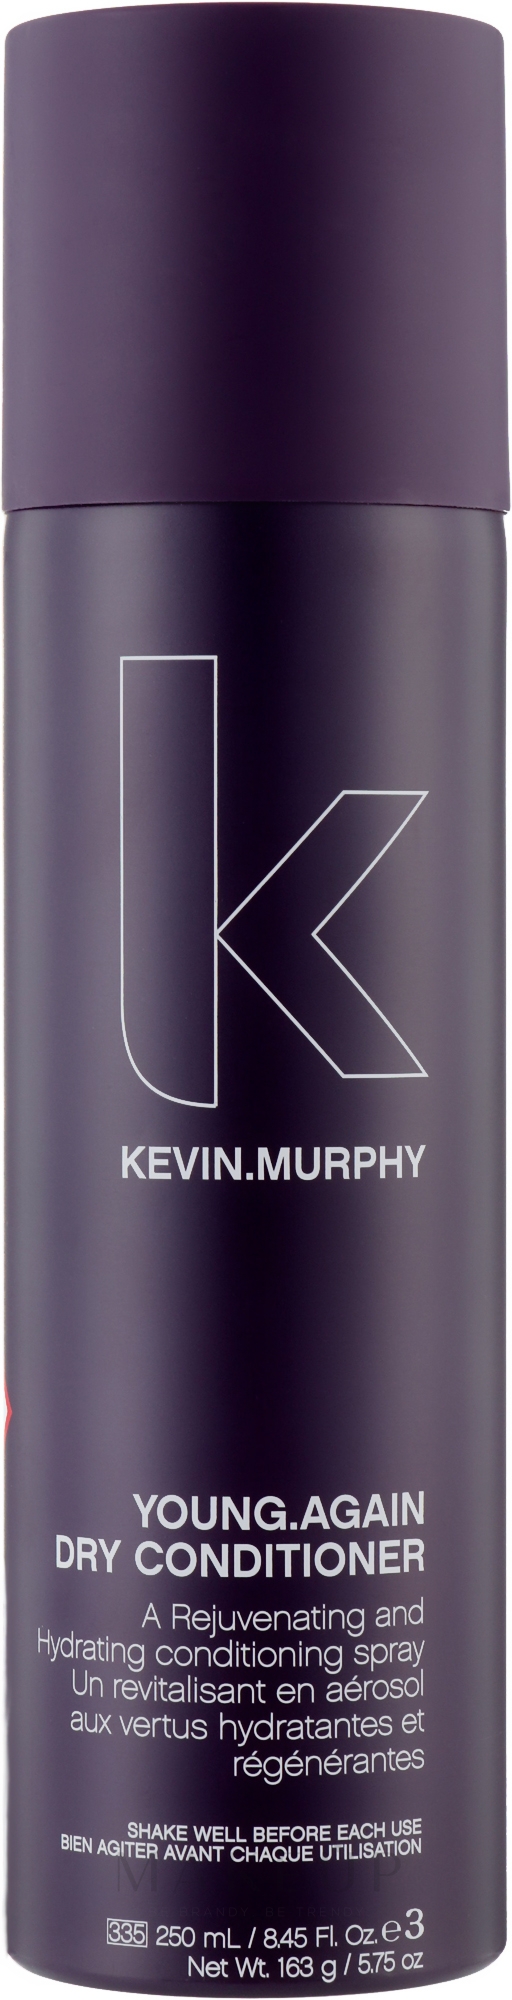 Verjüngende und feuchtigkeitsspendende trockene Spray-Haarspülung - Kevin.Murphy Young.Again Dry Conditioner — Bild 250 ml